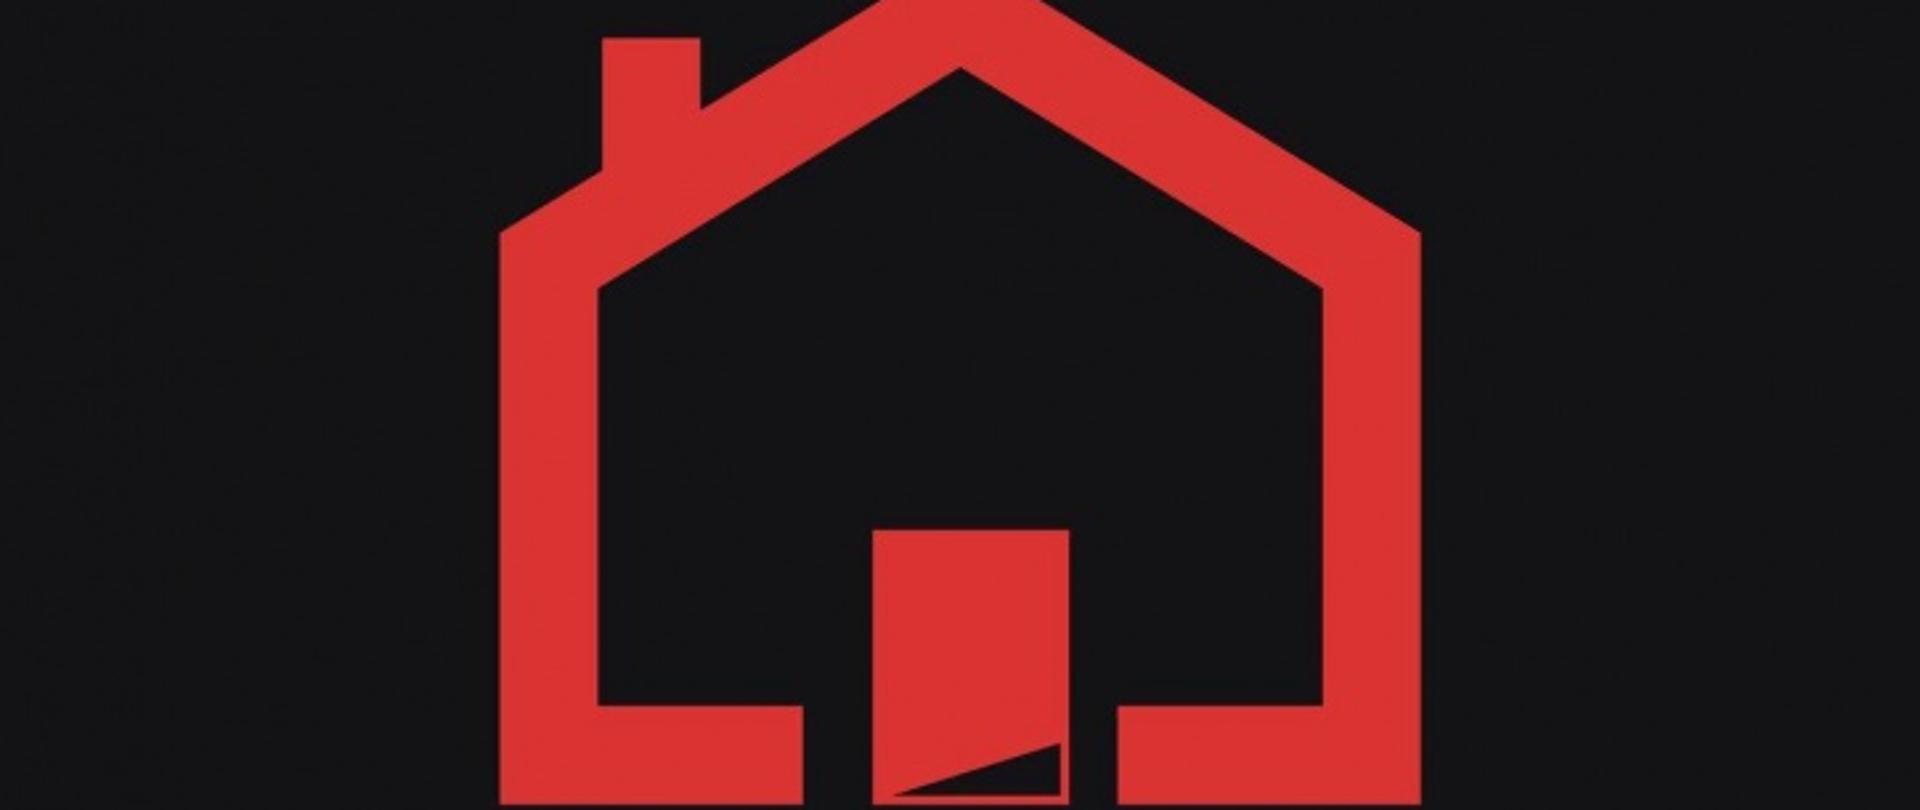 Sadza płonie. Czad zabija. Żyj. Czyść komin! Napisy na czarnym tle. Grafika przedstawiająca dom z kominem czerwonego koloru w centralnej części plakatu.